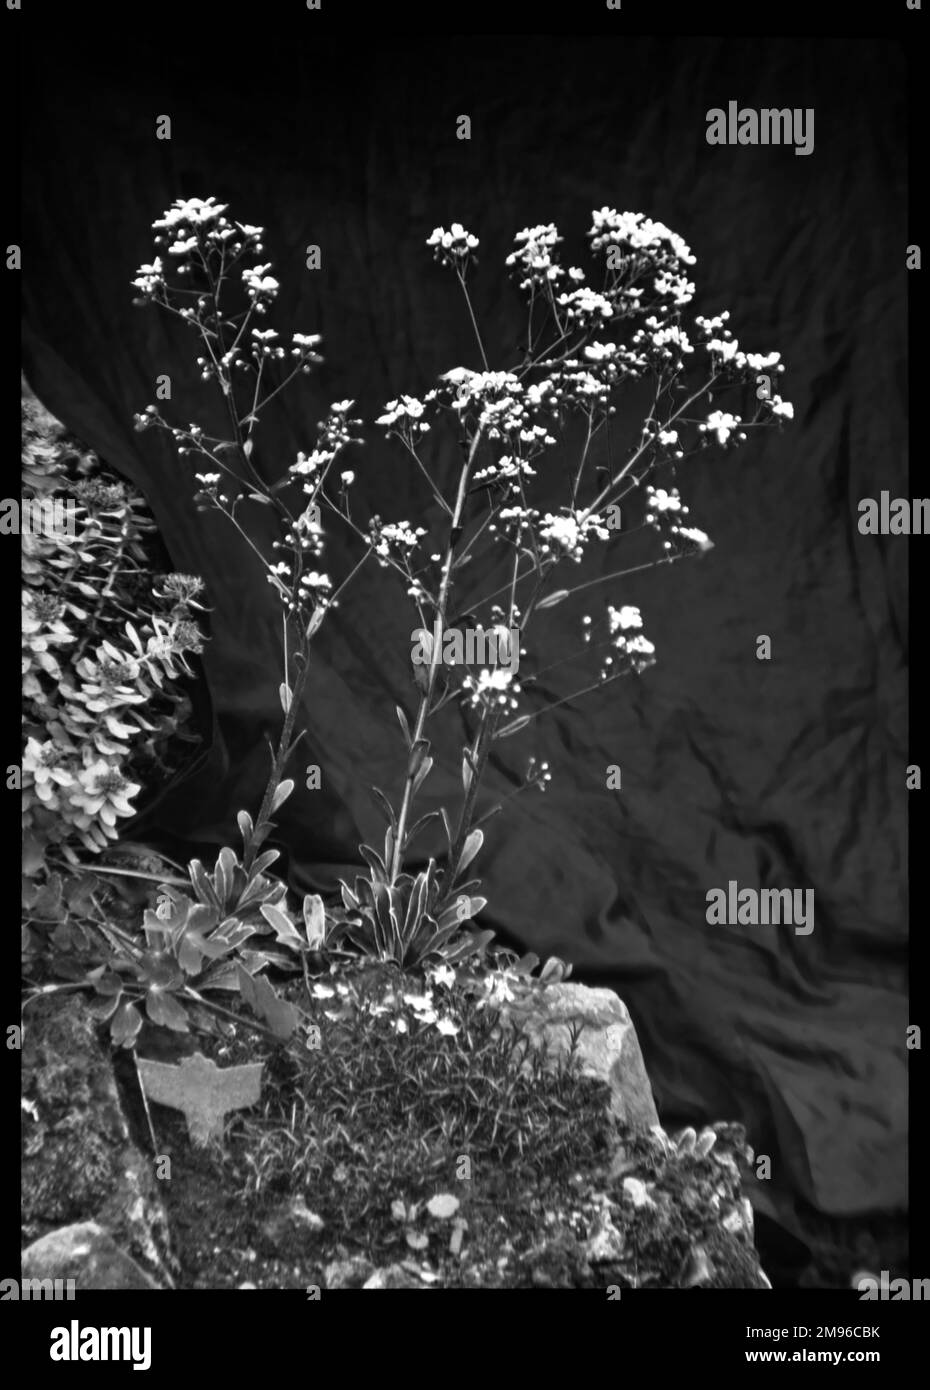 Saxifraga Cotyledon Pyramidalis (große alpine Felsfolie, Großraum Evergreen Saxifrage, Maiden Saxifrage), eine blühende Pflanze der Familie der Saxifragaceae (allgemein bekannt als Saxifragen oder Steinbrecher wegen ihrer Fähigkeit, in den Rissen zwischen Felsen zu wachsen). Hier wachsen sie in einer felsigen Umgebung. Stockfoto